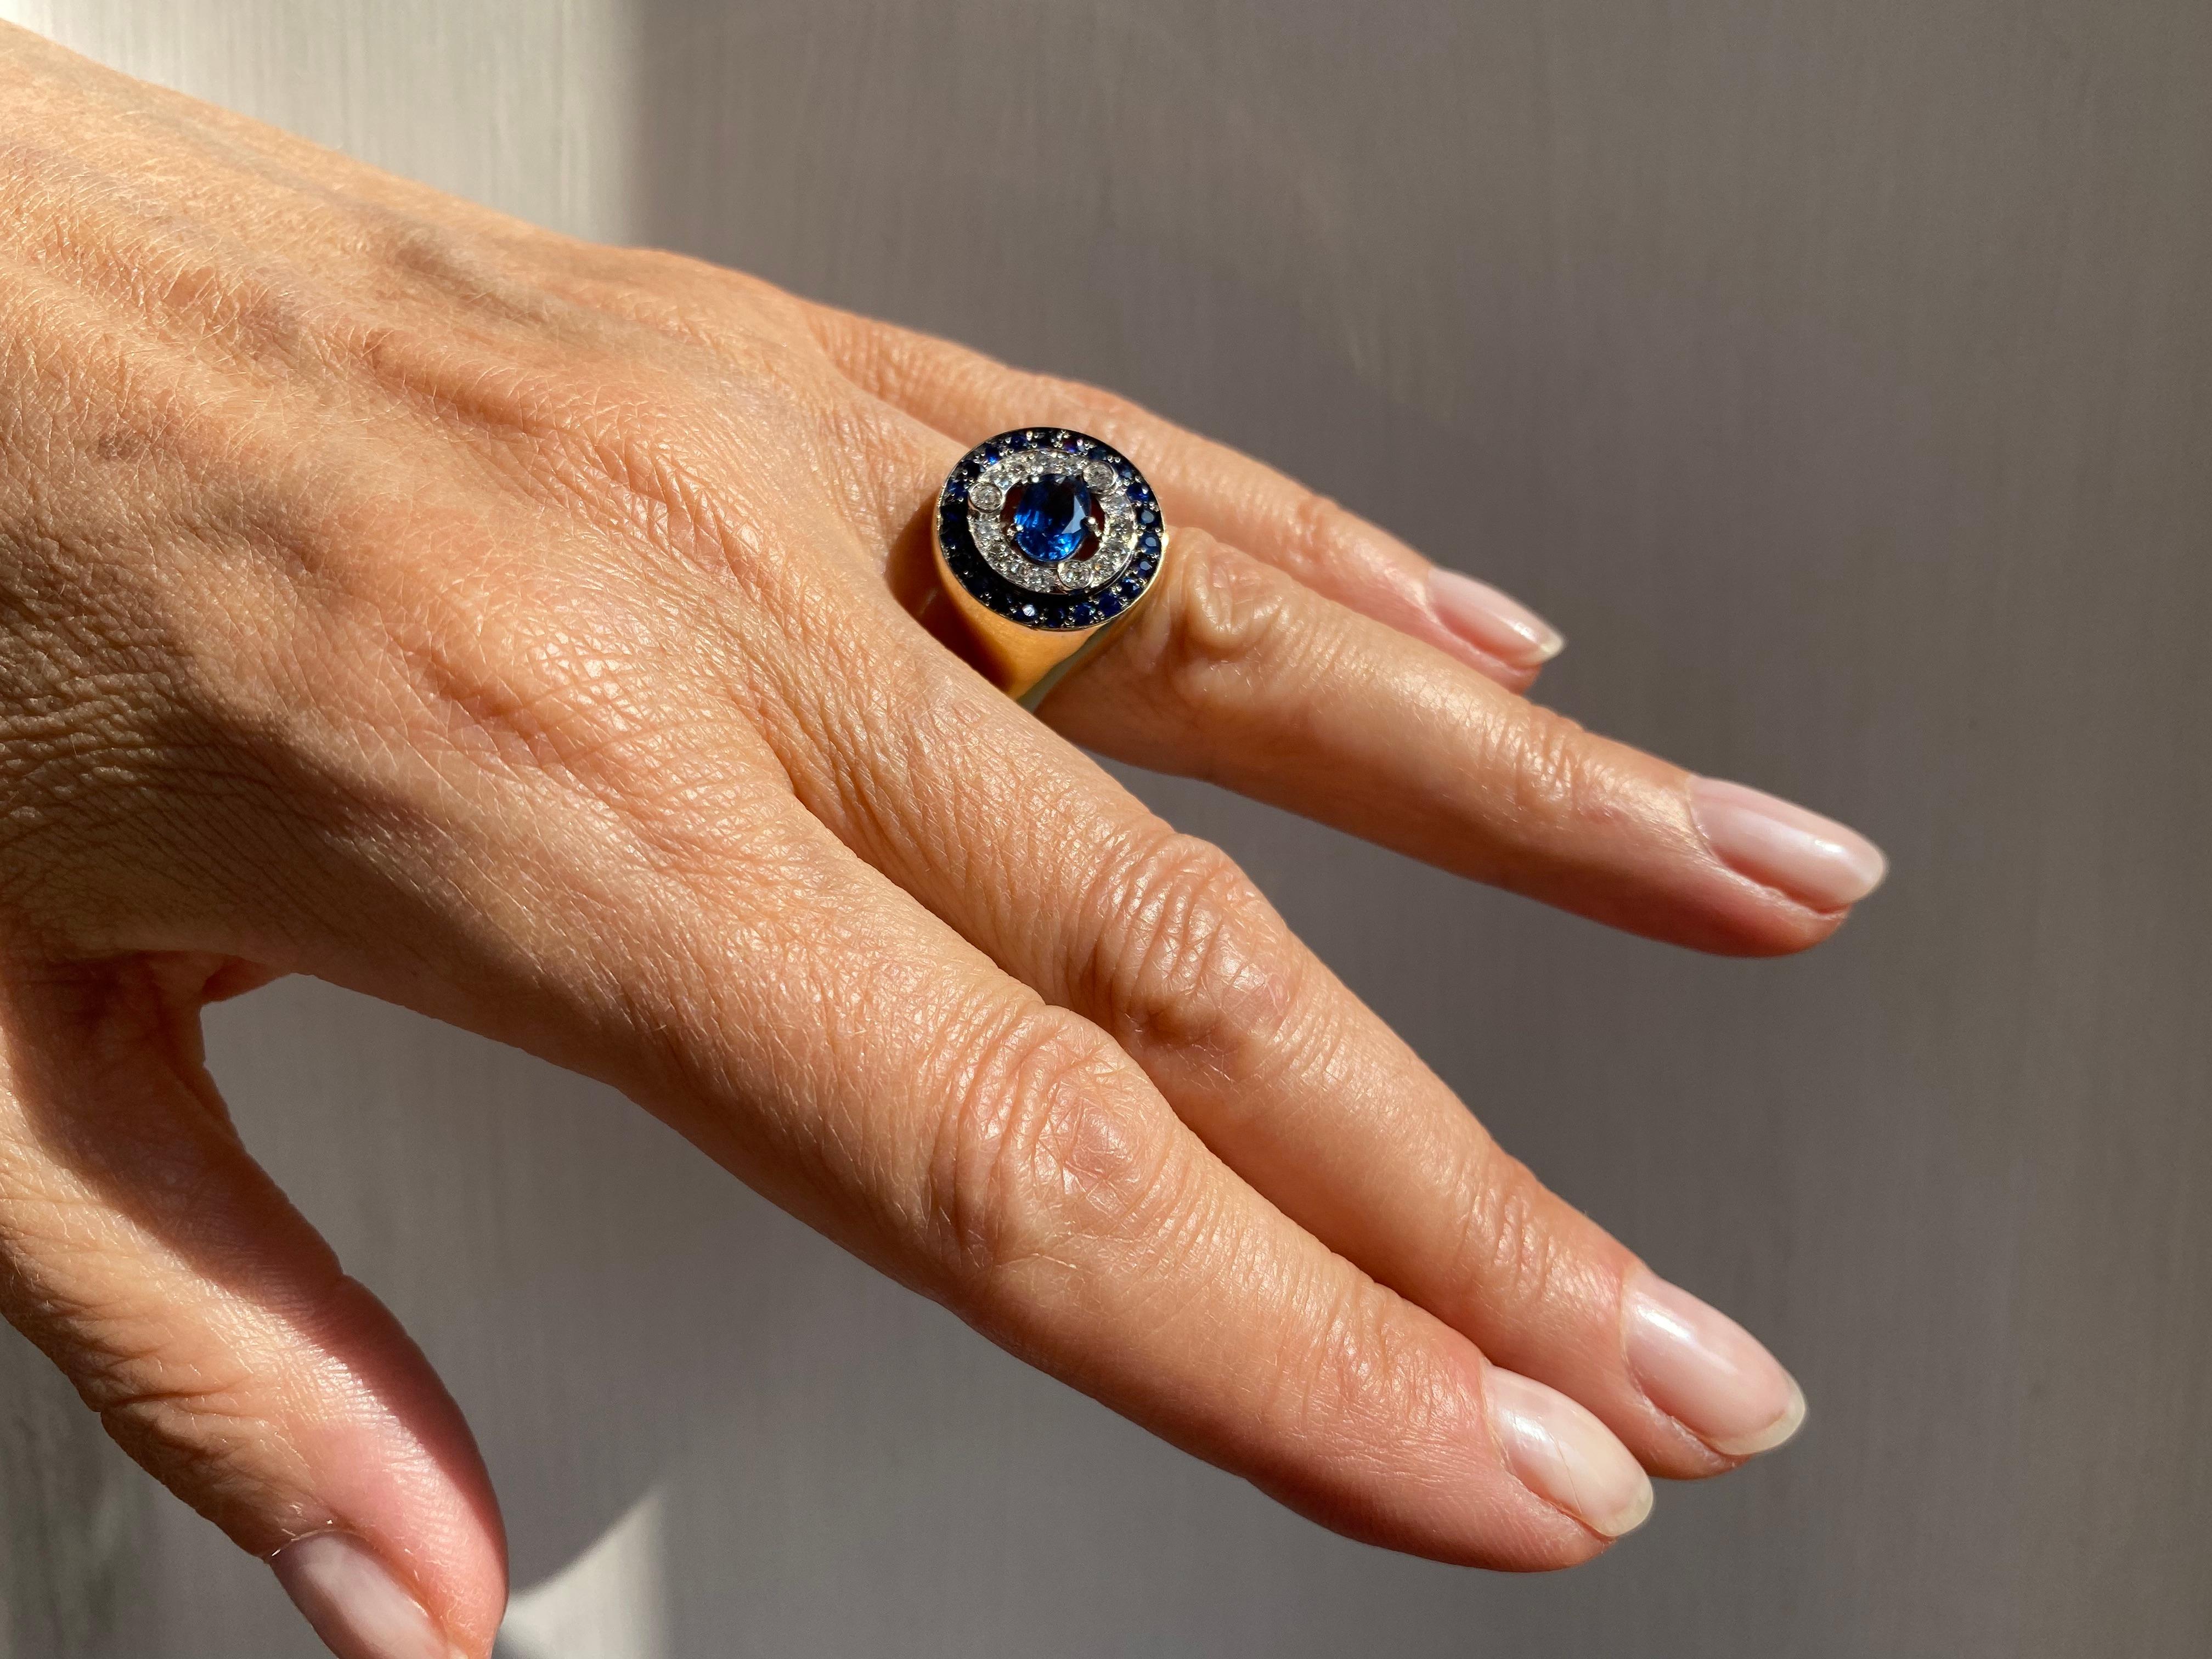 Collection Rossella Ugolini Design 1.62 Karat Sapphires 0.33 White Diamonds 18 Karat Gold Modern Style Design Ring. Une bague étonnante fabriquée à la main en or jaune 18 carats et ornée de magnifiques saphirs de 1,62 carat et de diamants blancs